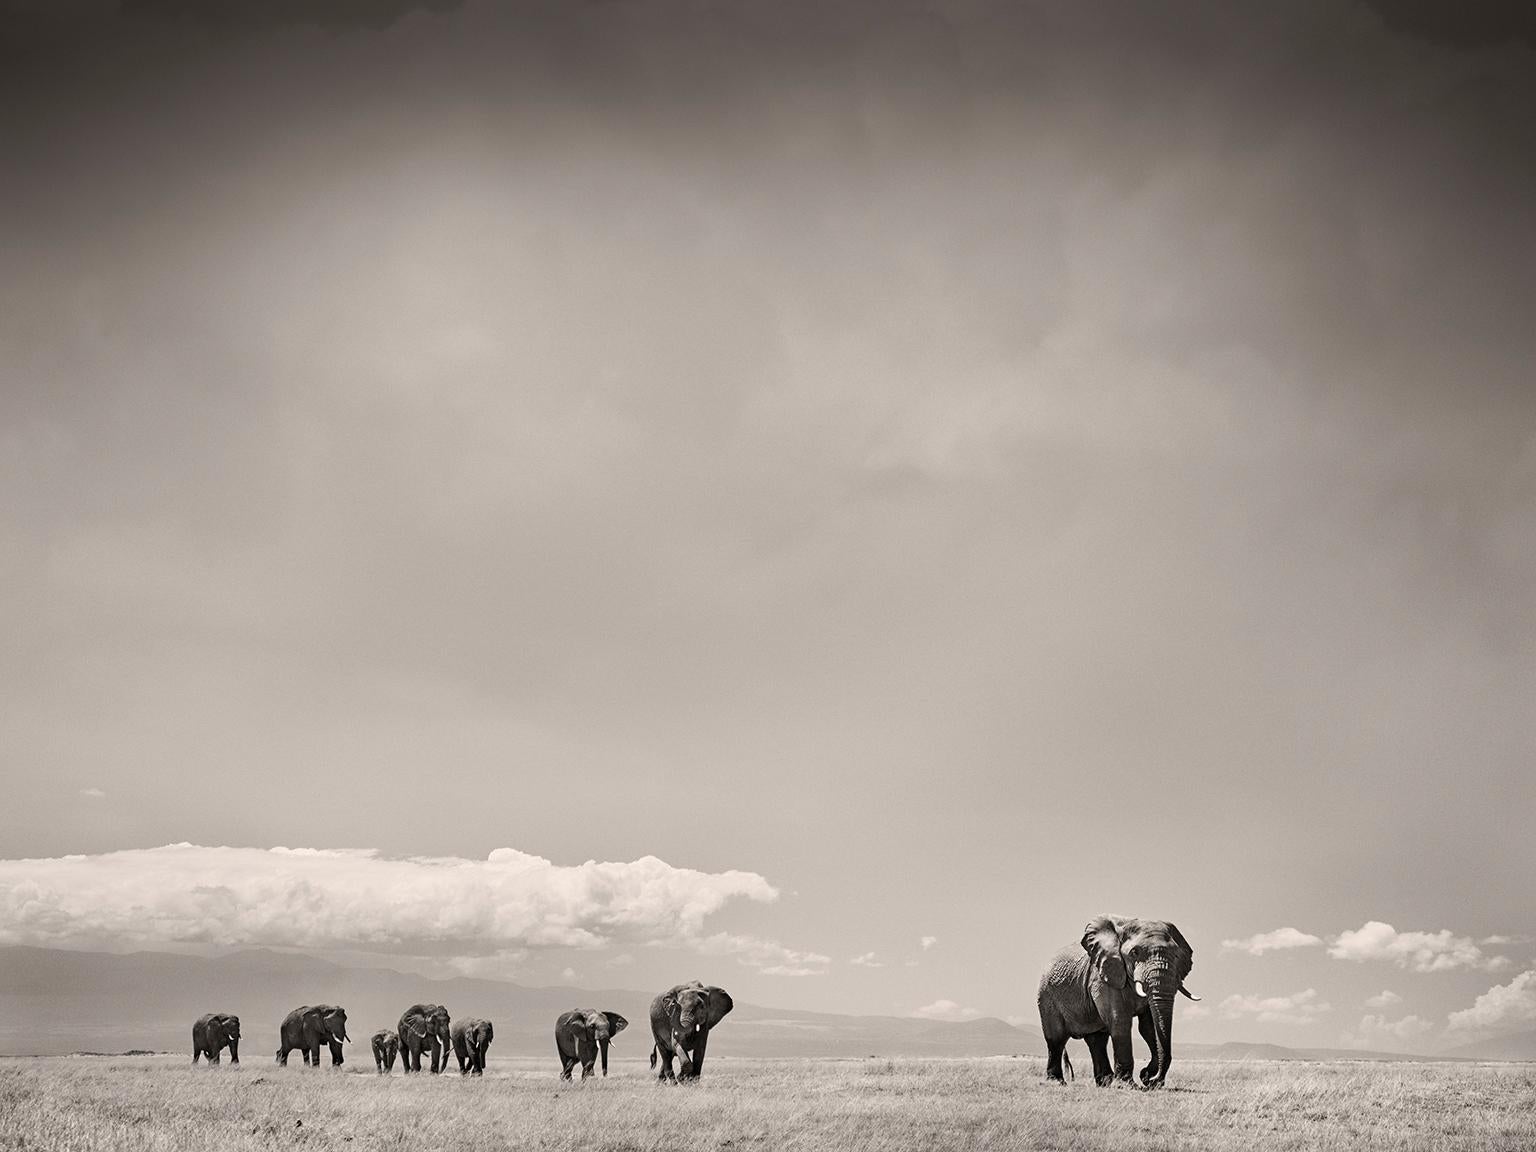 Joachim Schmeisser Landscape Photograph – The Matriarch, Elefant, Tier, Tierwelt, Schwarz-Weiß-Fotografie